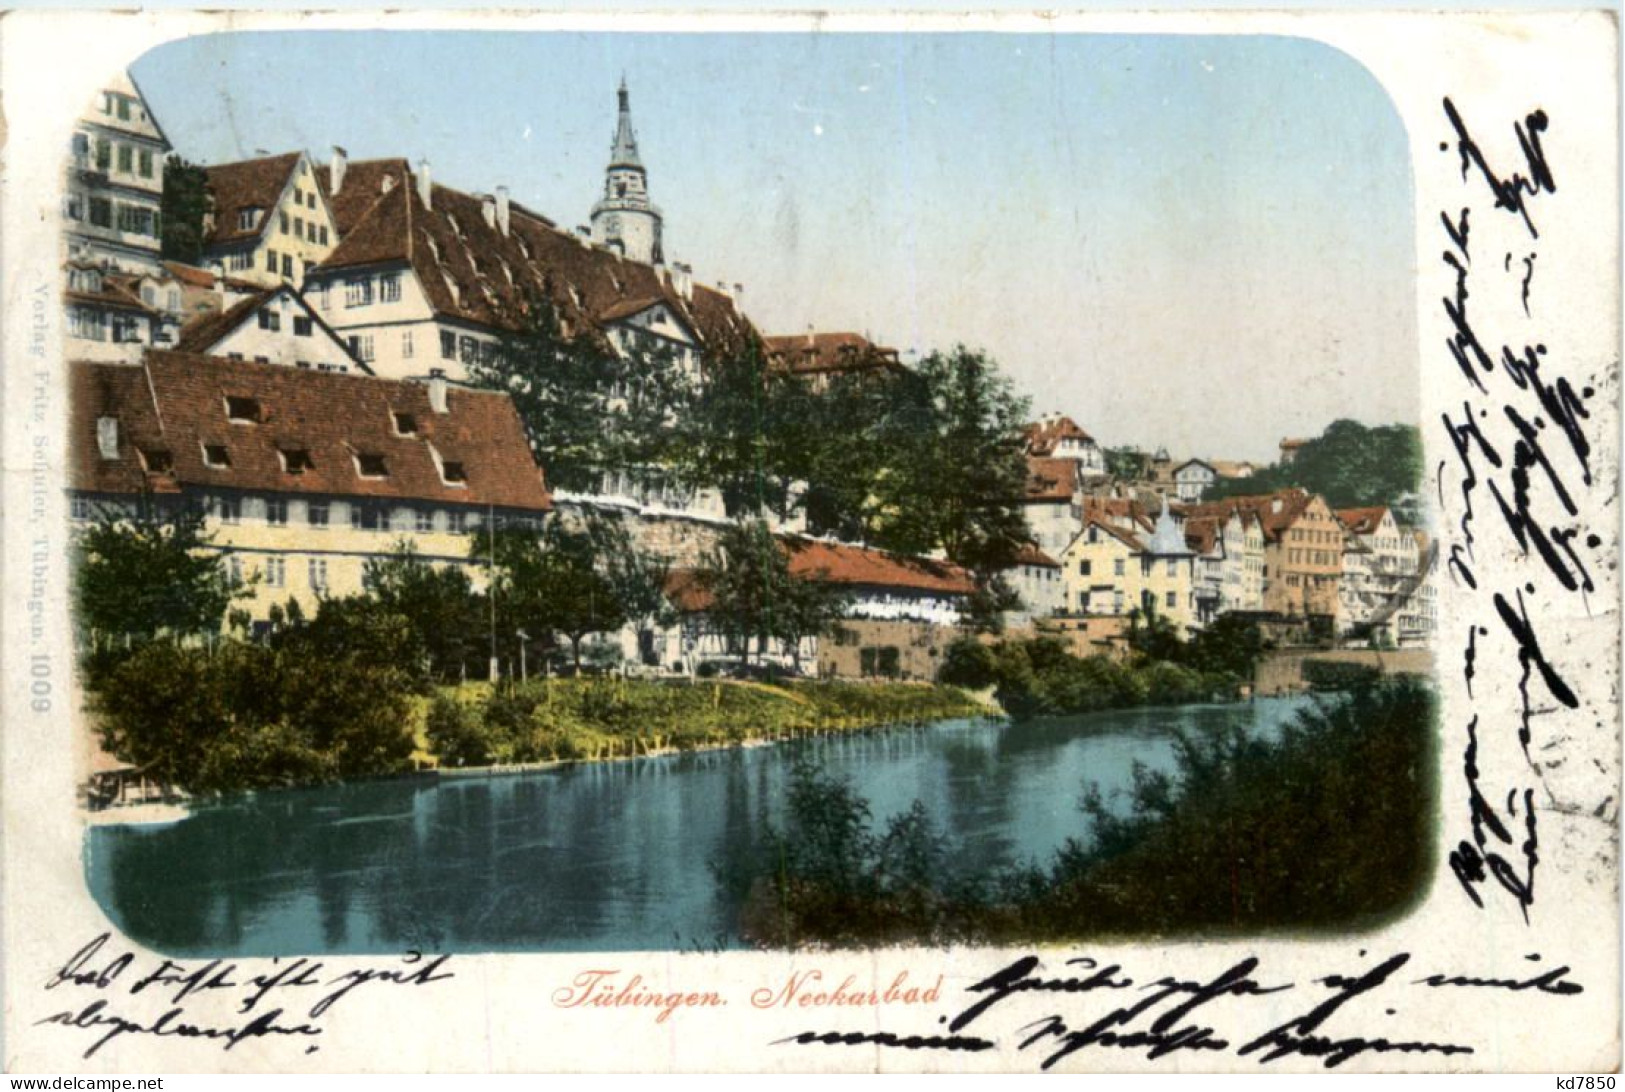 Tübingen, Neckarbad - Tuebingen